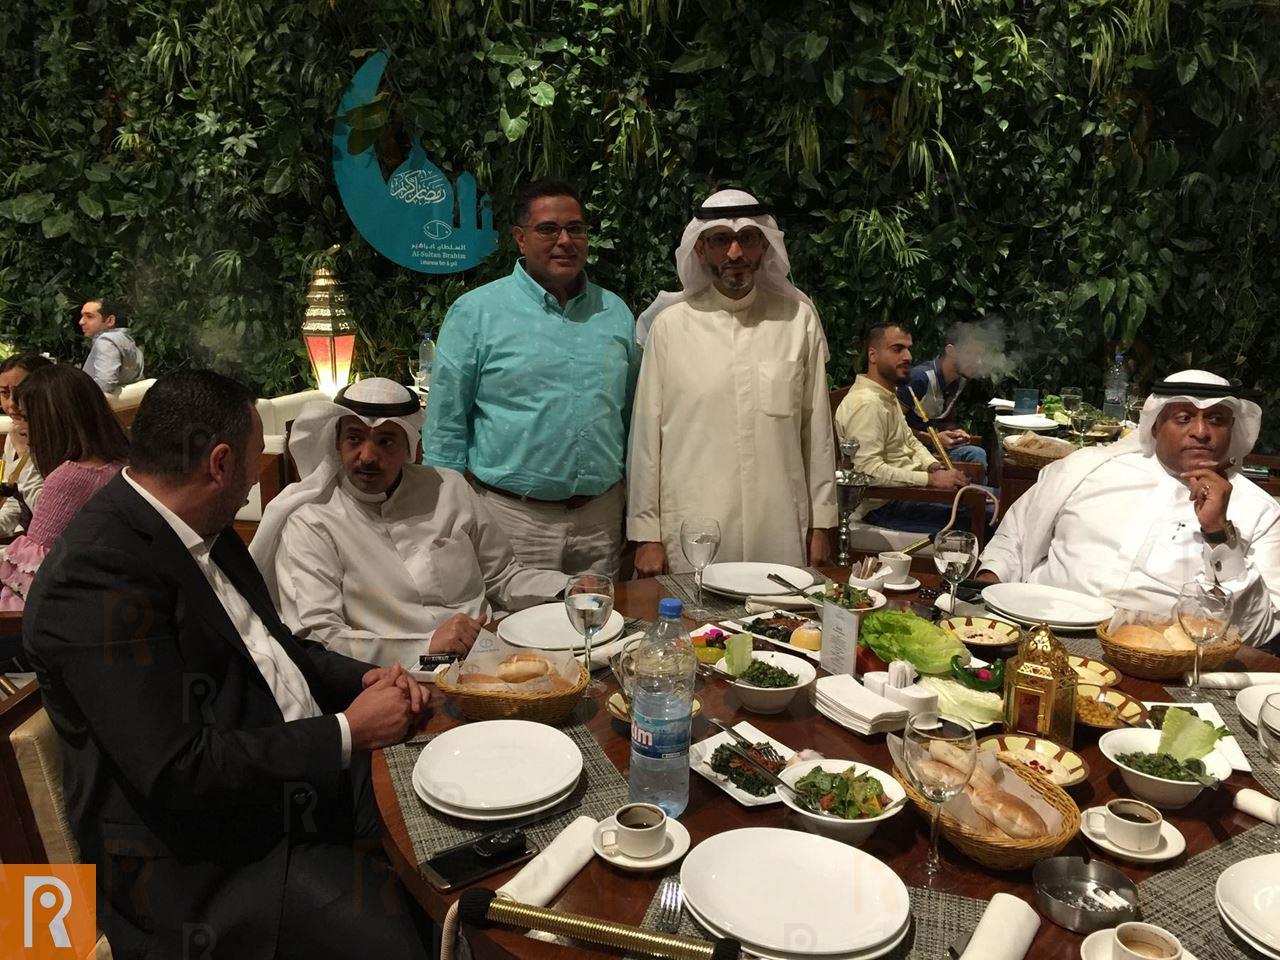 الراية المتحدة للتطوير والتشغيل العقاري تحتفي بإعلاميي الكويت بغبقة رمضانية